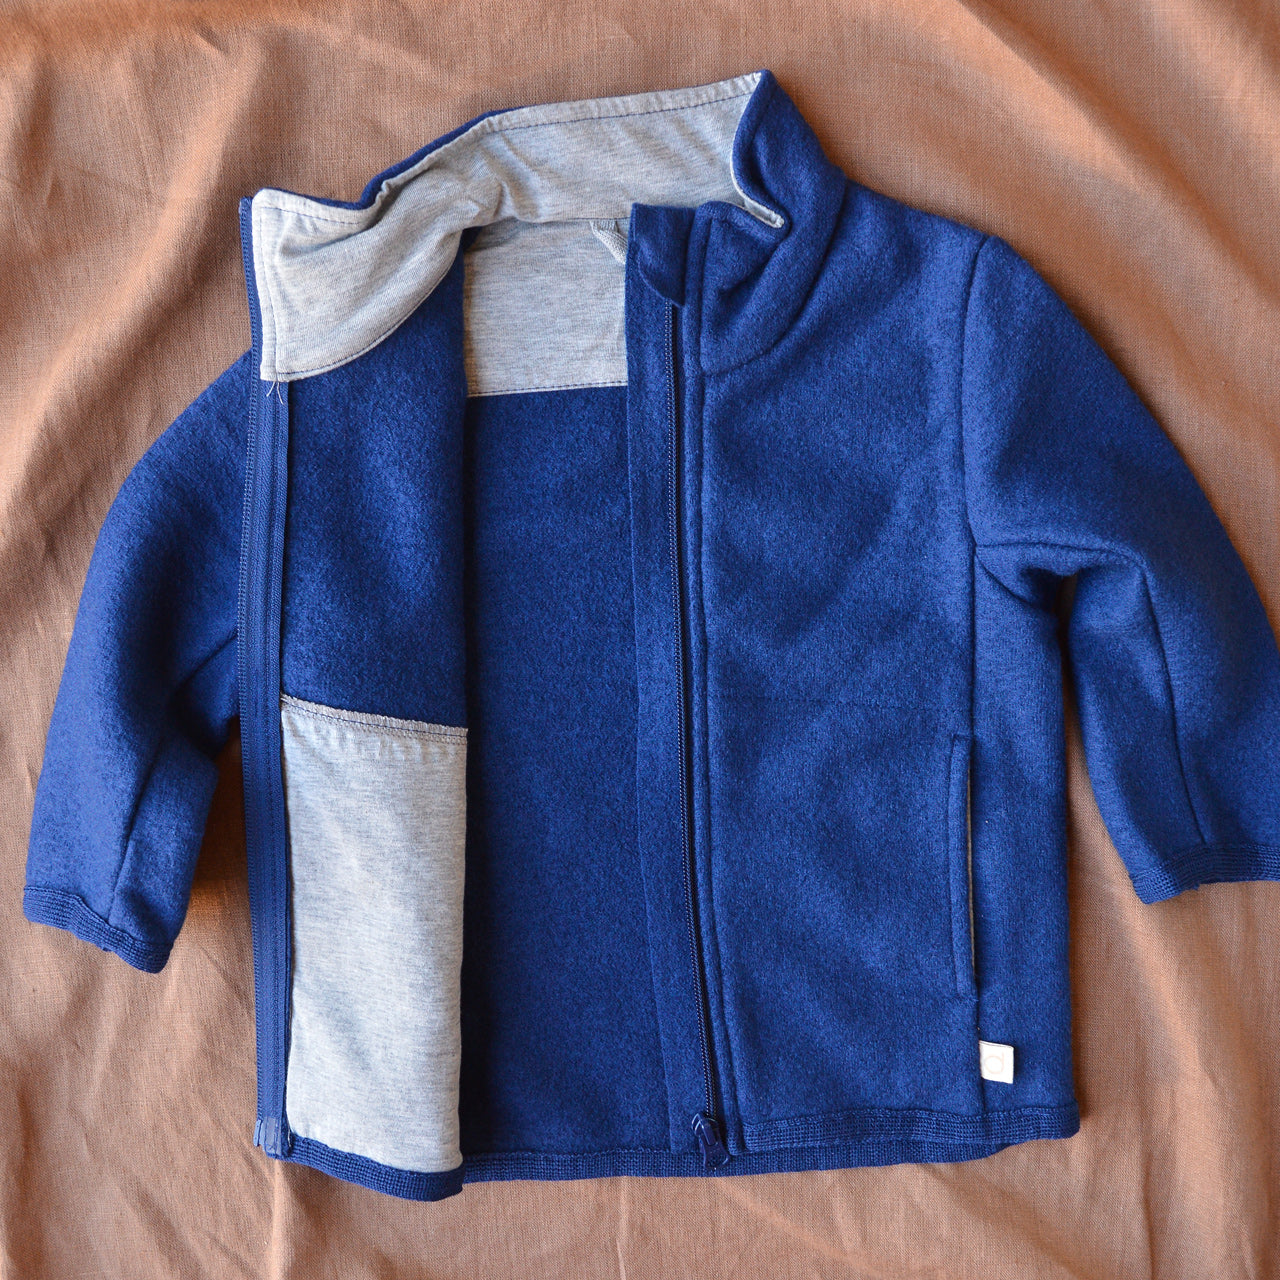 Organic Merino Wool Fleece Baby Jacket